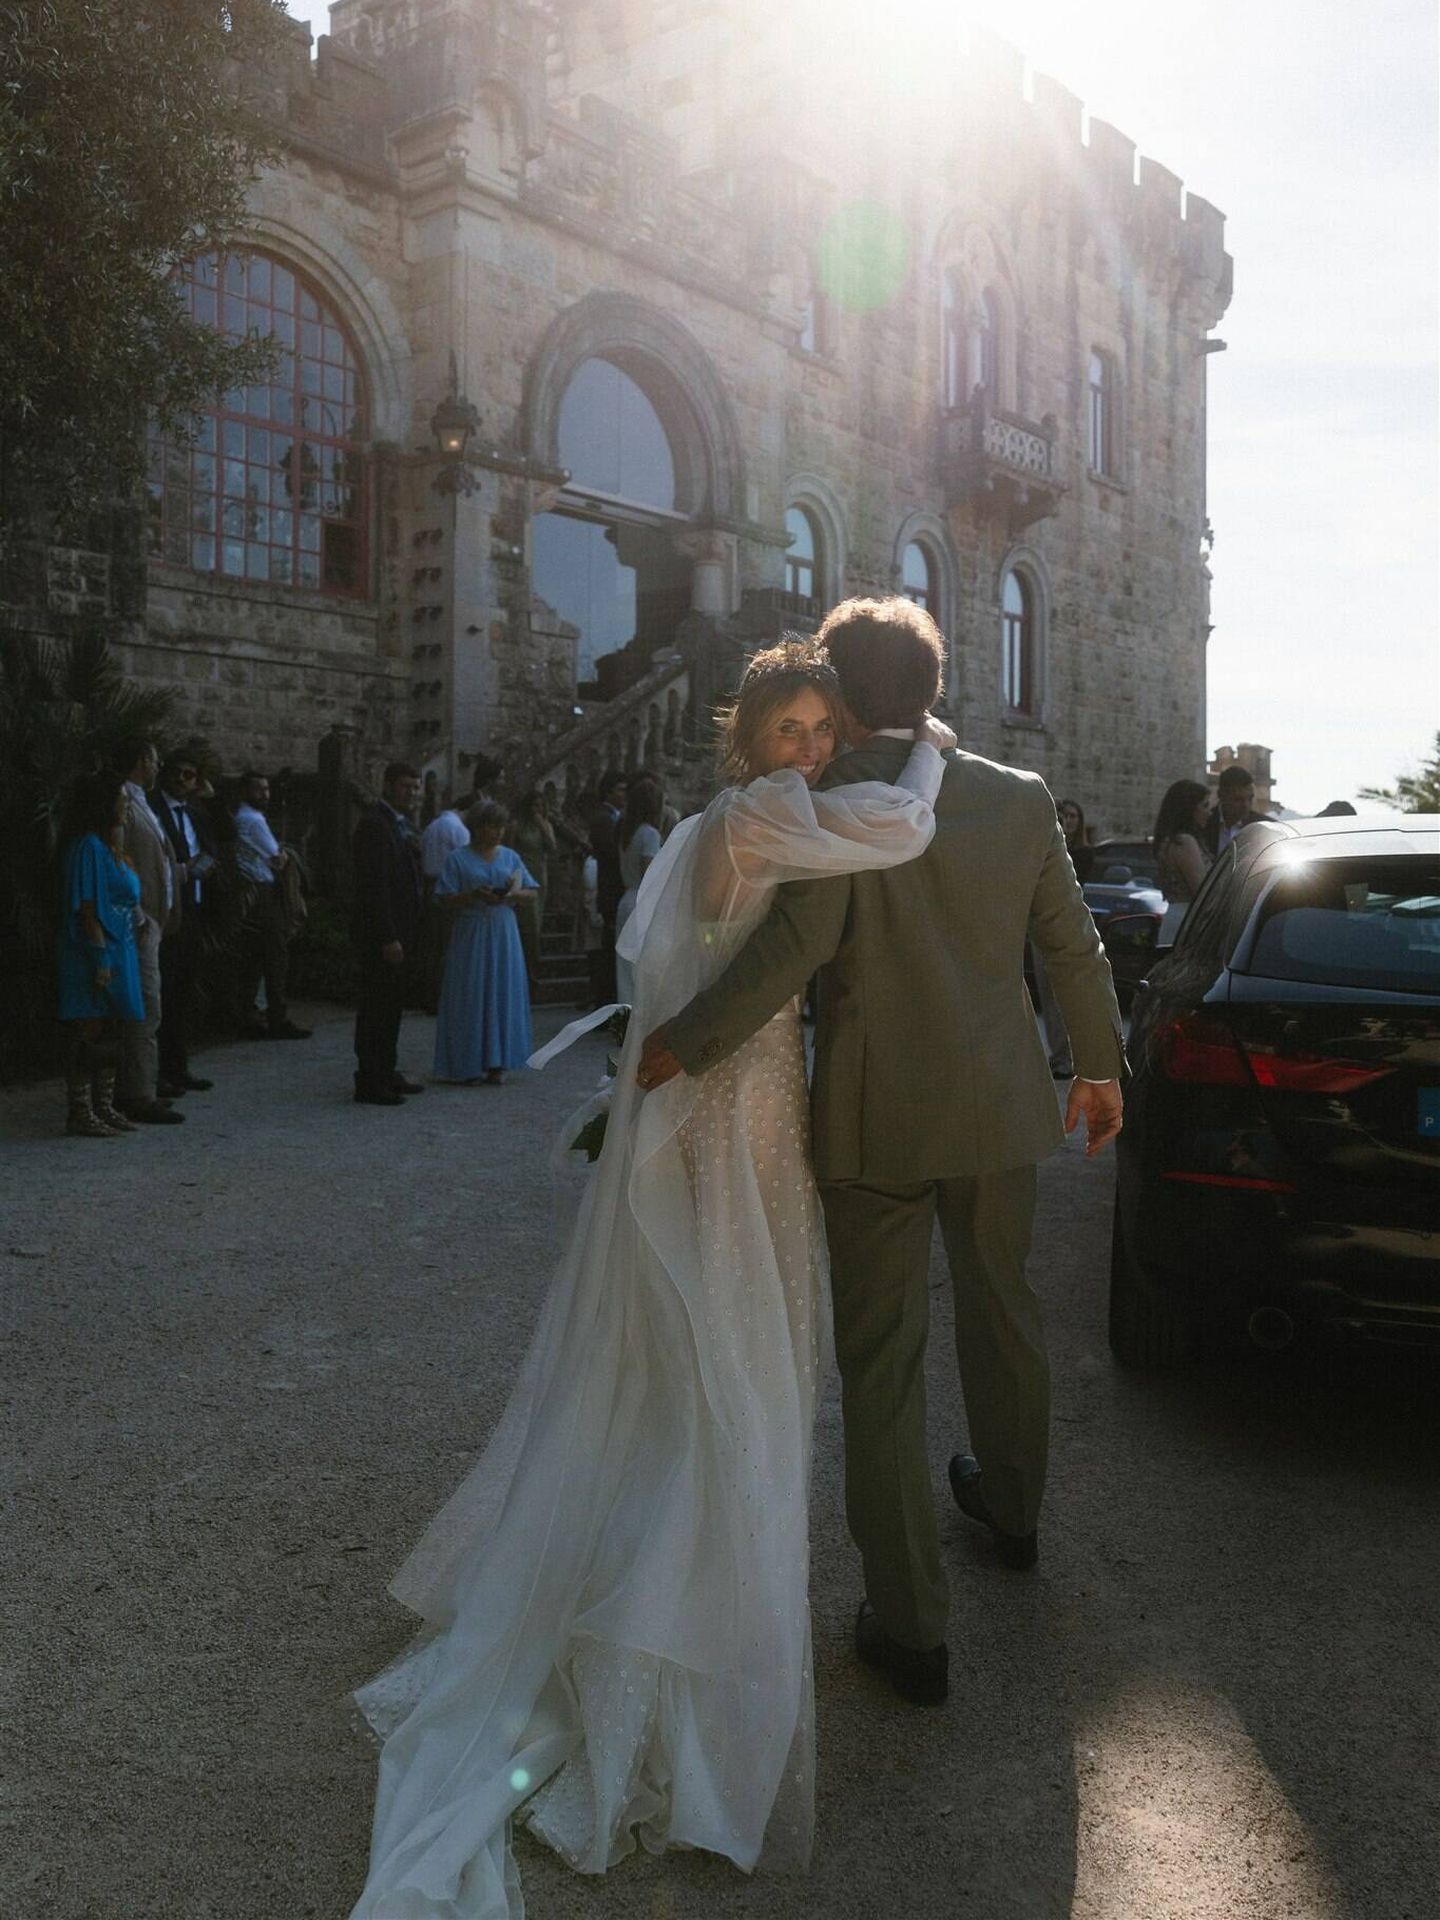 La boda de Marisa en Portugal. (Diego de Rando/ Derando Studio Wedding)